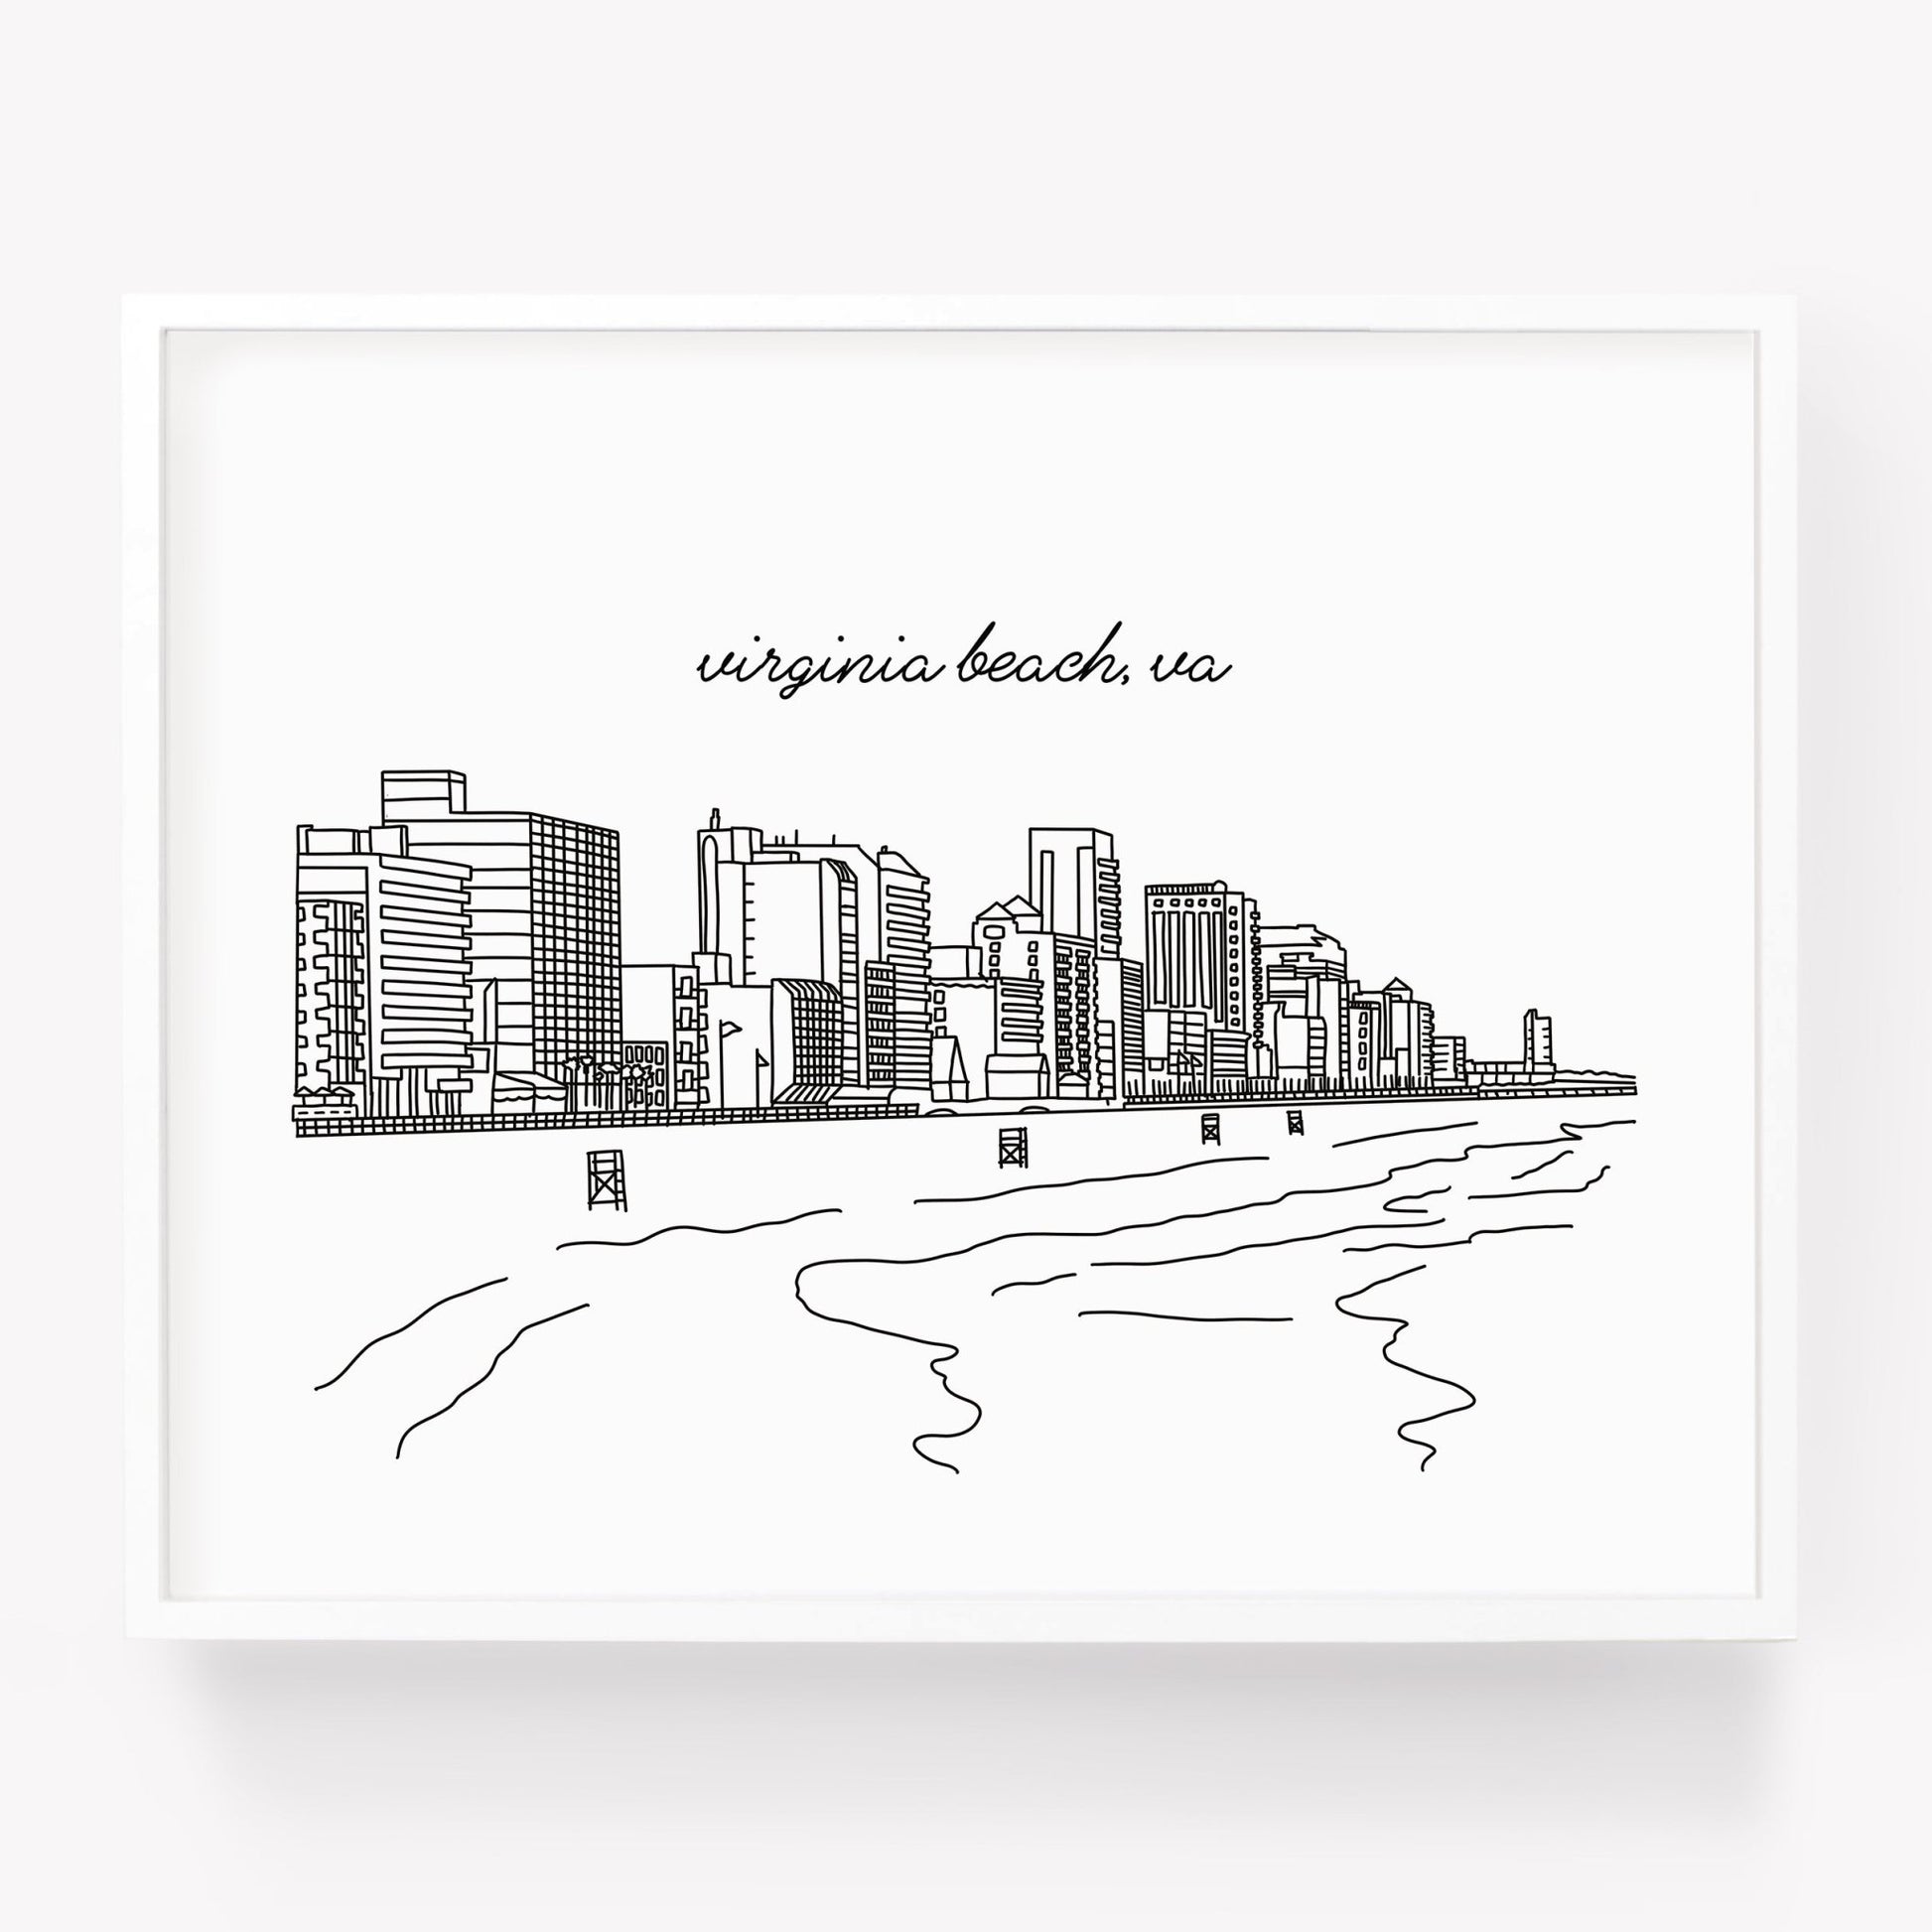 A city art print of a skyline drawing of Virginia Beach VA - Sparks House Co